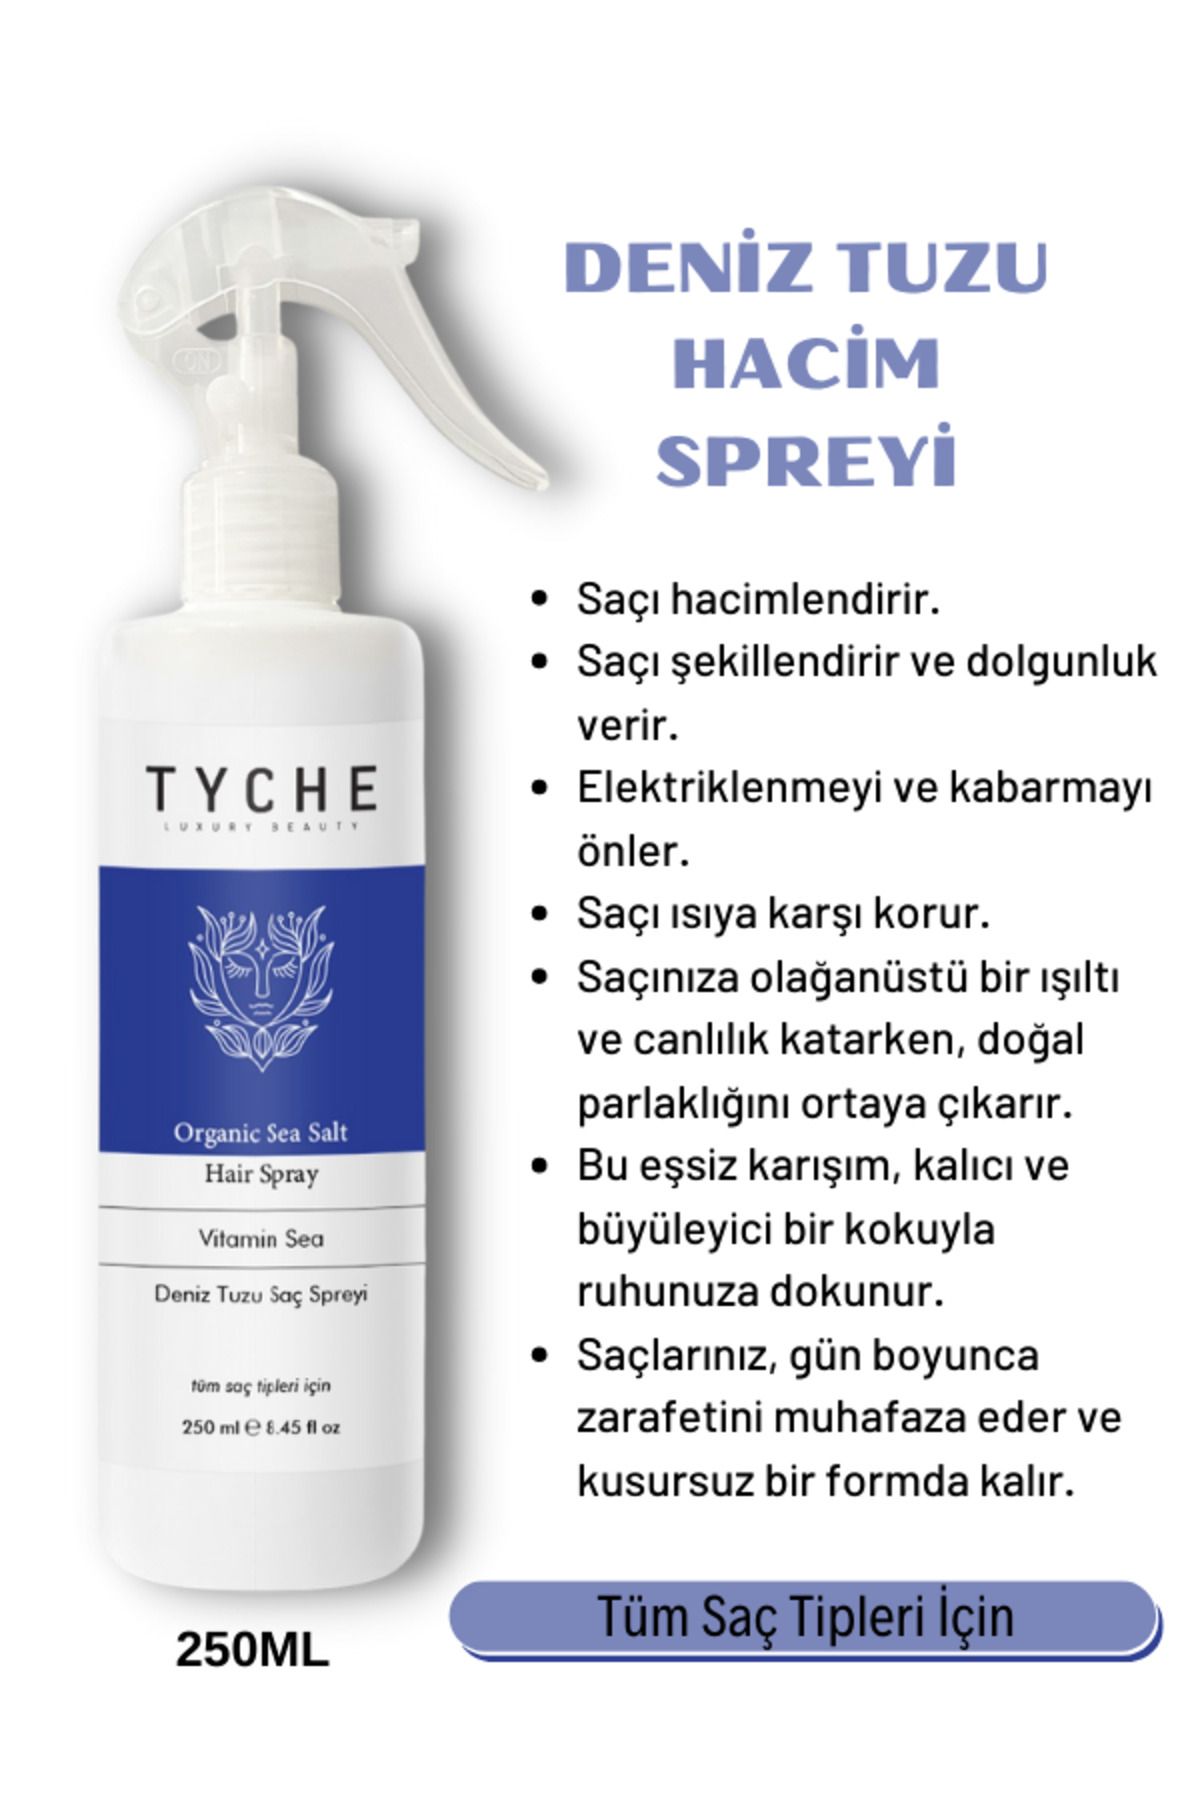 TYCHE LUXURY BEAUTY Hacim Ve Dolgunluk Veren Deniz Tuzu Saç Spreyi Organic Sea Salt Hair Spray Vitamin Sea 250 ml